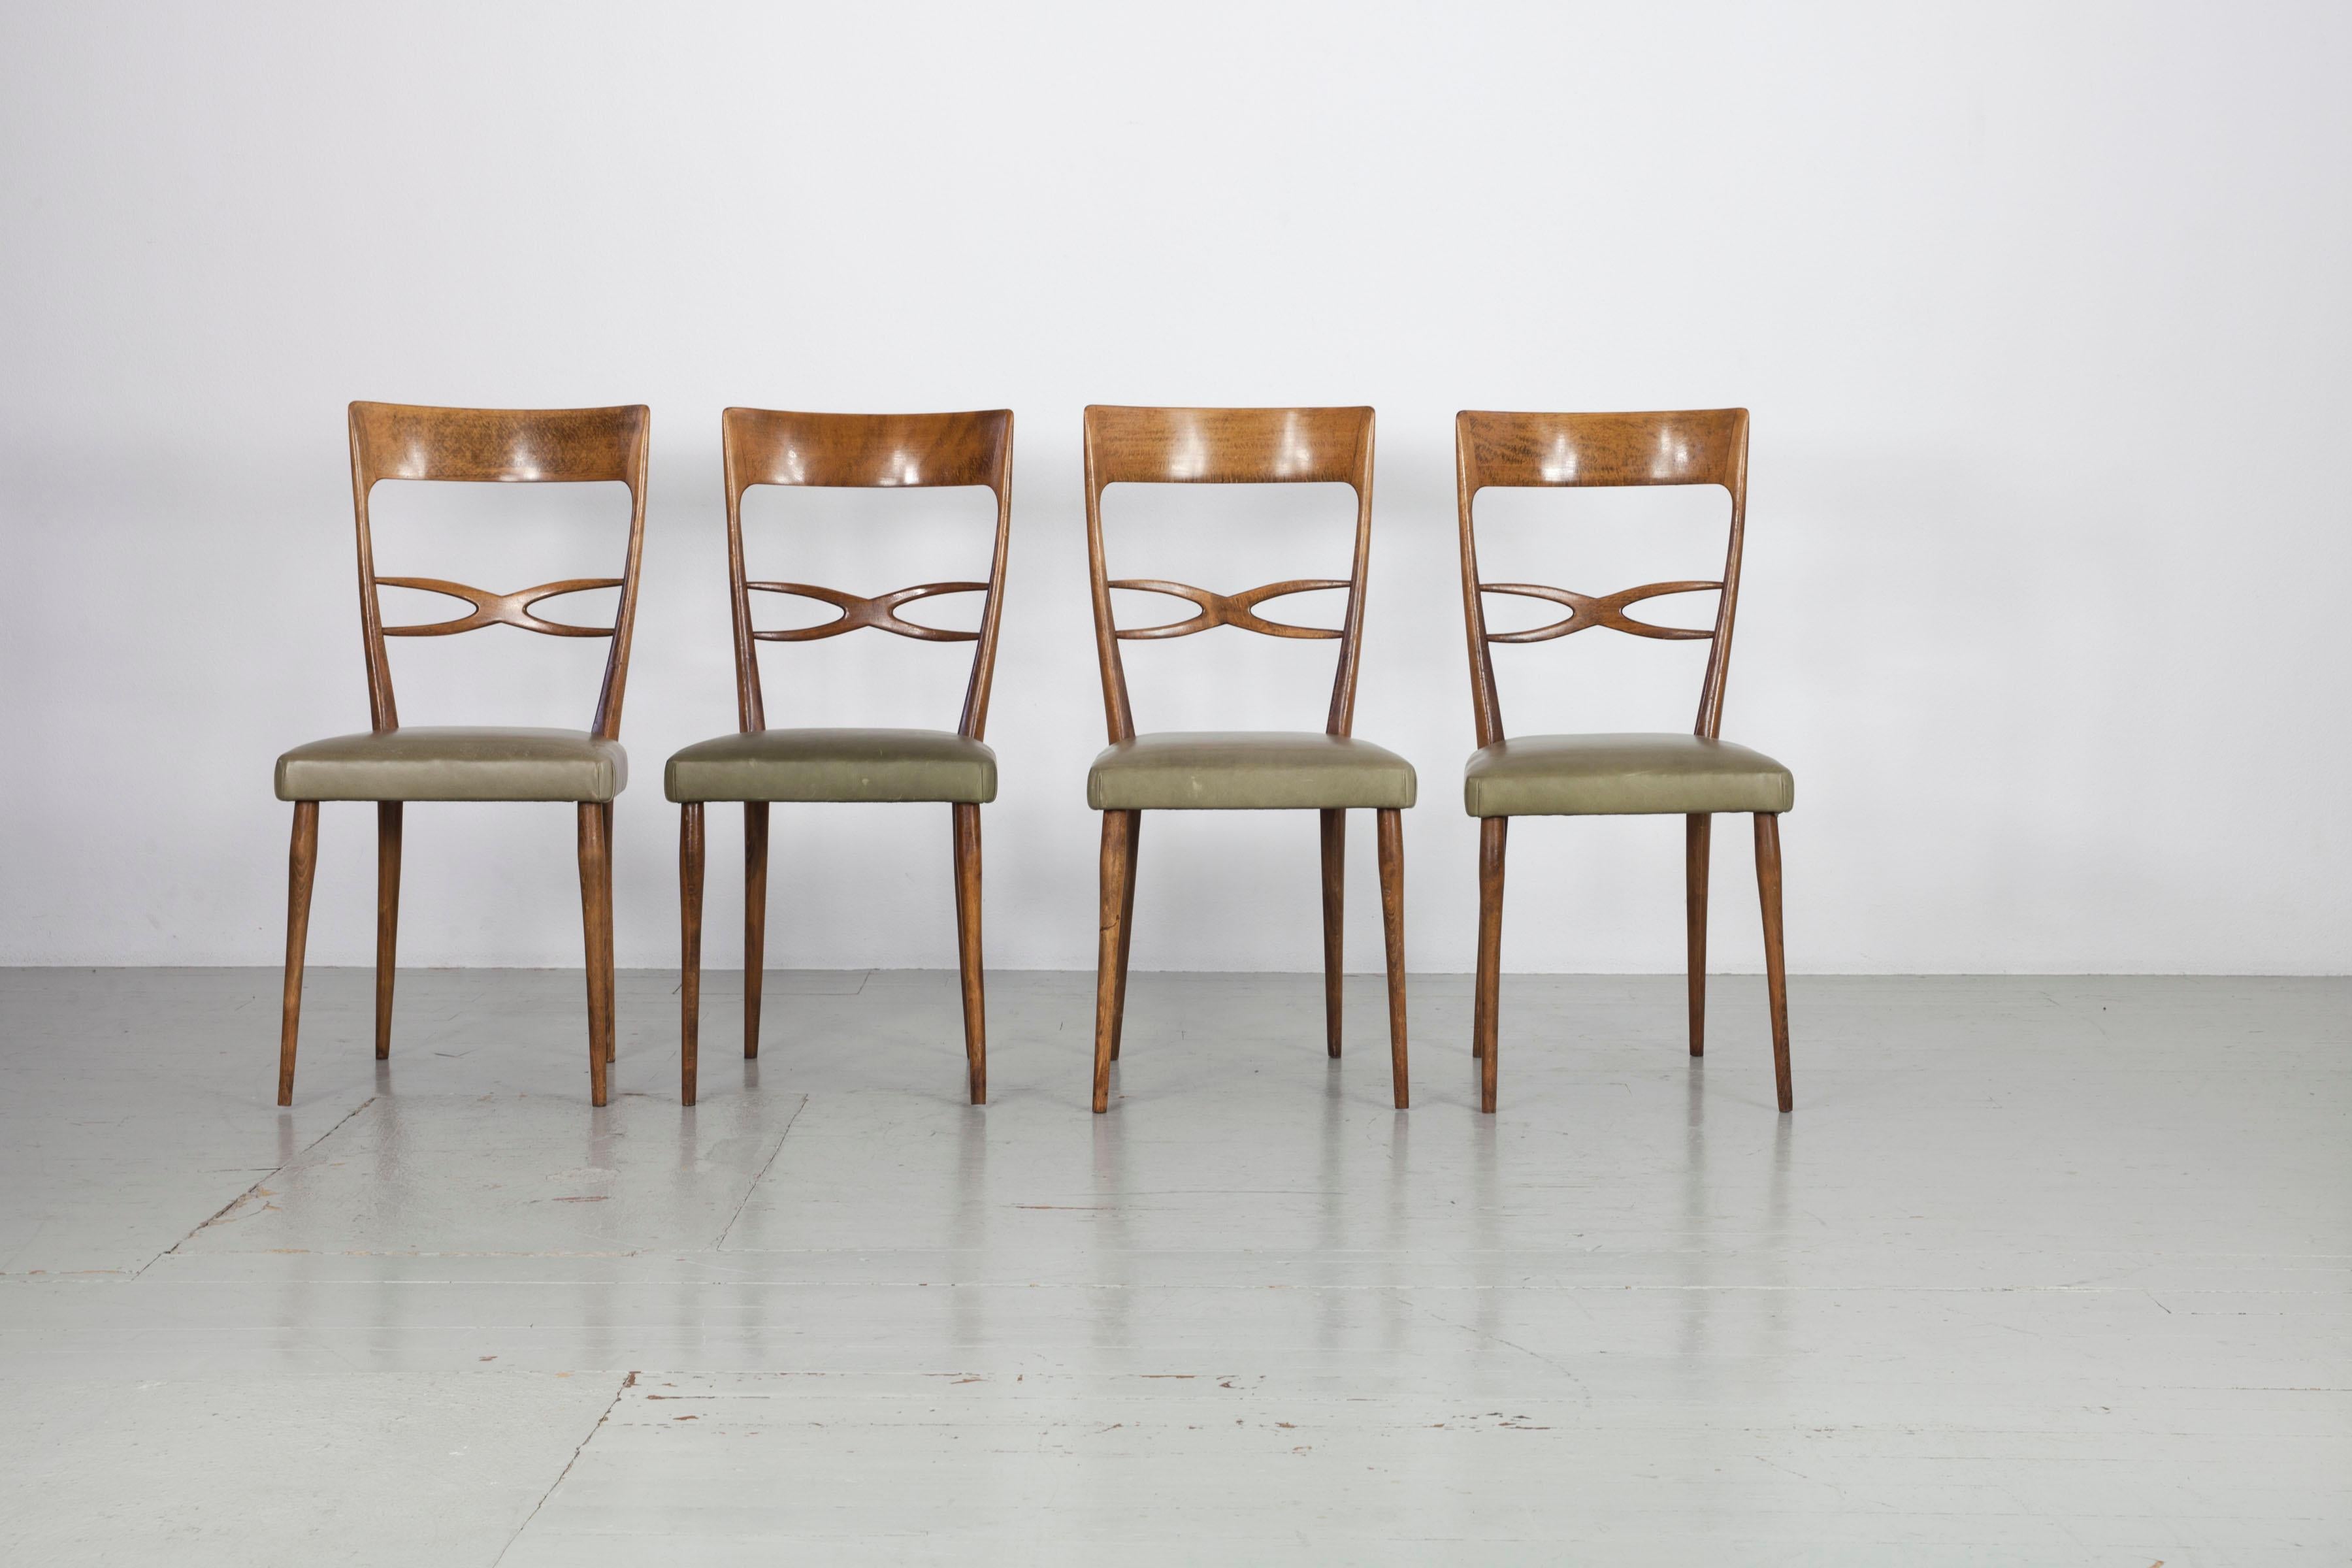 Este conjunto consta de 4 sillas del fabricante italiano Consorzio Sedie Friuli. El armazón de madera de haya lacada presenta una ligera decoloración, mientras que la funda de piel auténtica de color oliva tiene una bonita pátina. Todo el conjunto